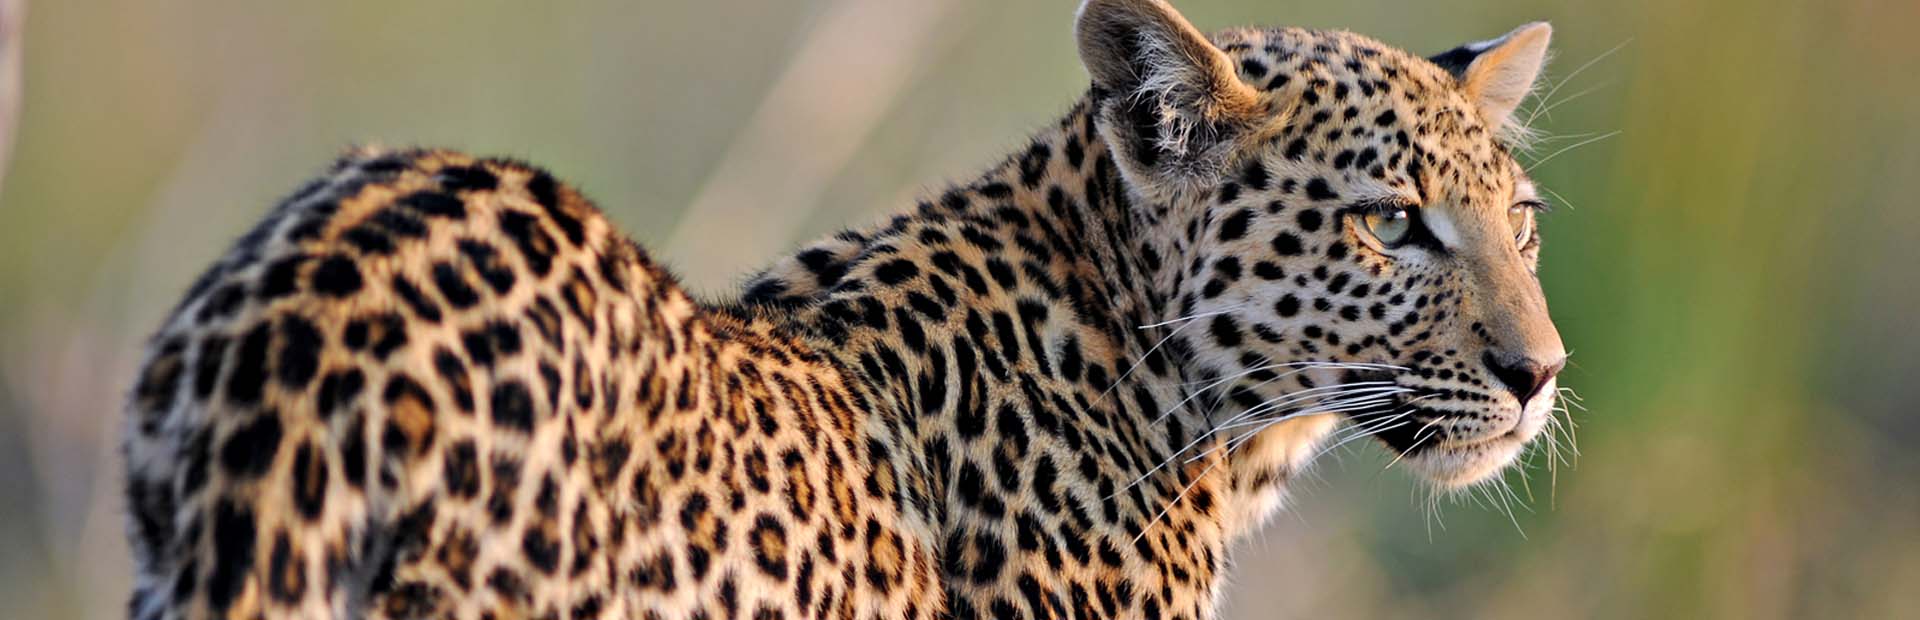 African Leopard in Botswana